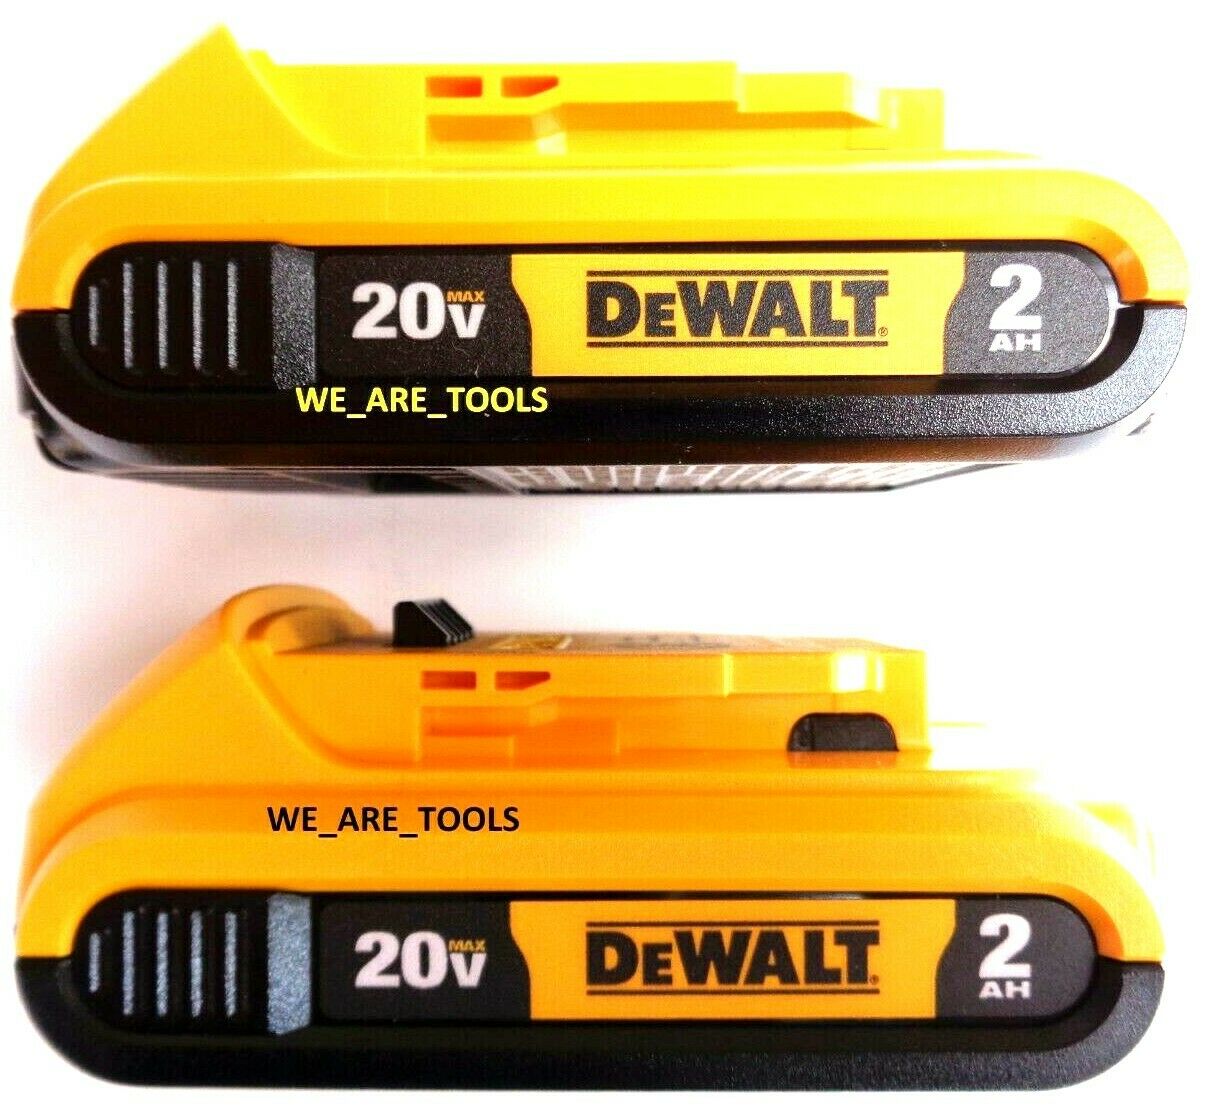 (2) New Genuine Dewalt 20v Dcb203 2.0 Ah Max Batteries 20 Volt For Drill, Saw